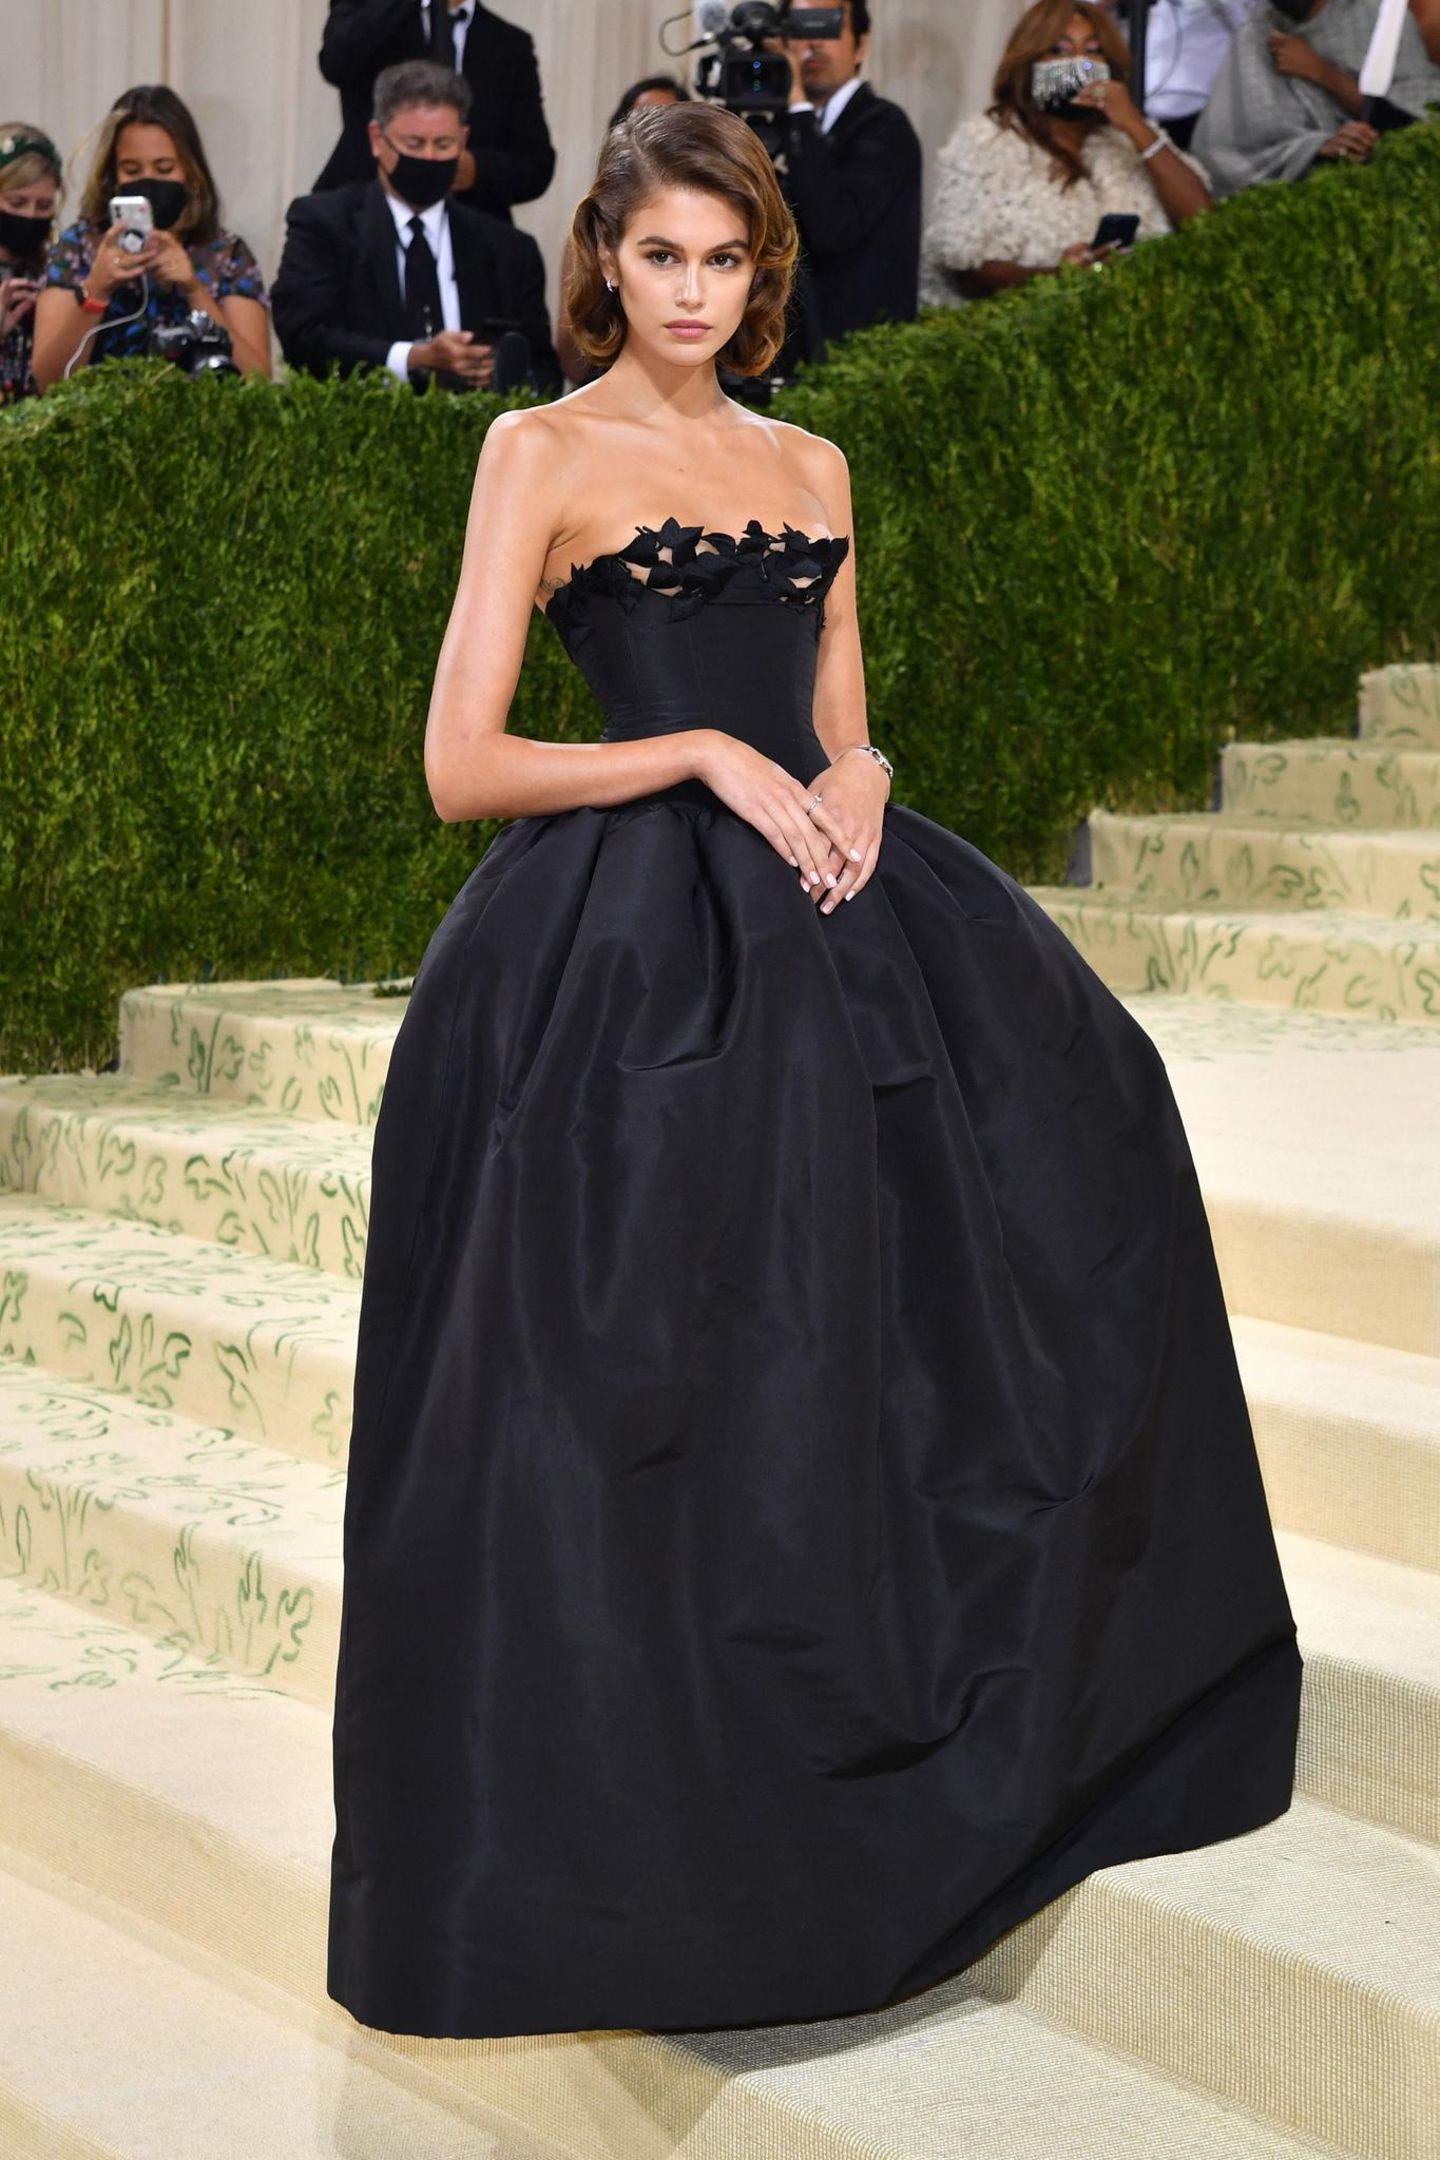 Bei Kaia Gerber ist "Old Hollywood"-Glamour angesagt. Ihr Kleid von Oscar De La Renta wurde von Bianca Jagger inspiriert.